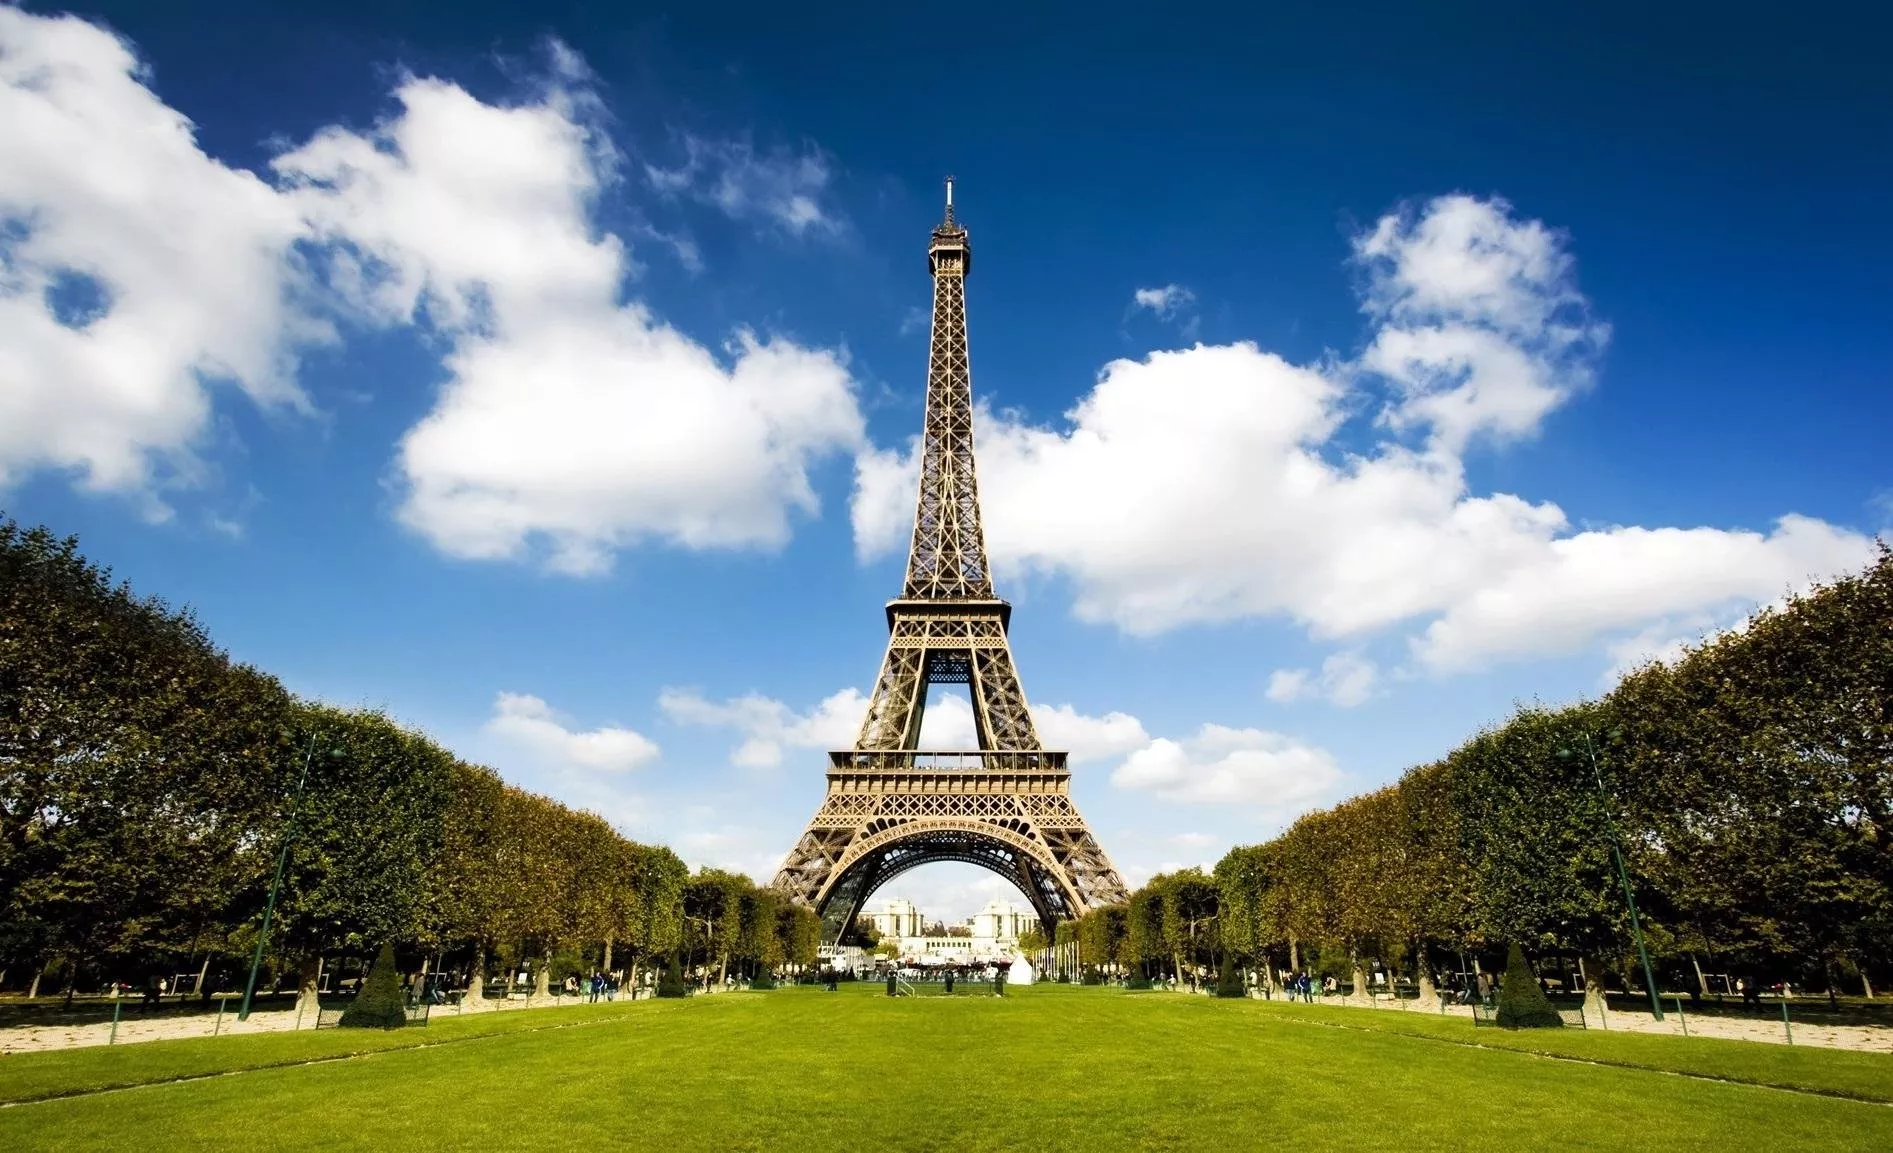 أفضل الاماكن السياحية في باريس... لا تفوّتي زيارتها عند السفر إليها